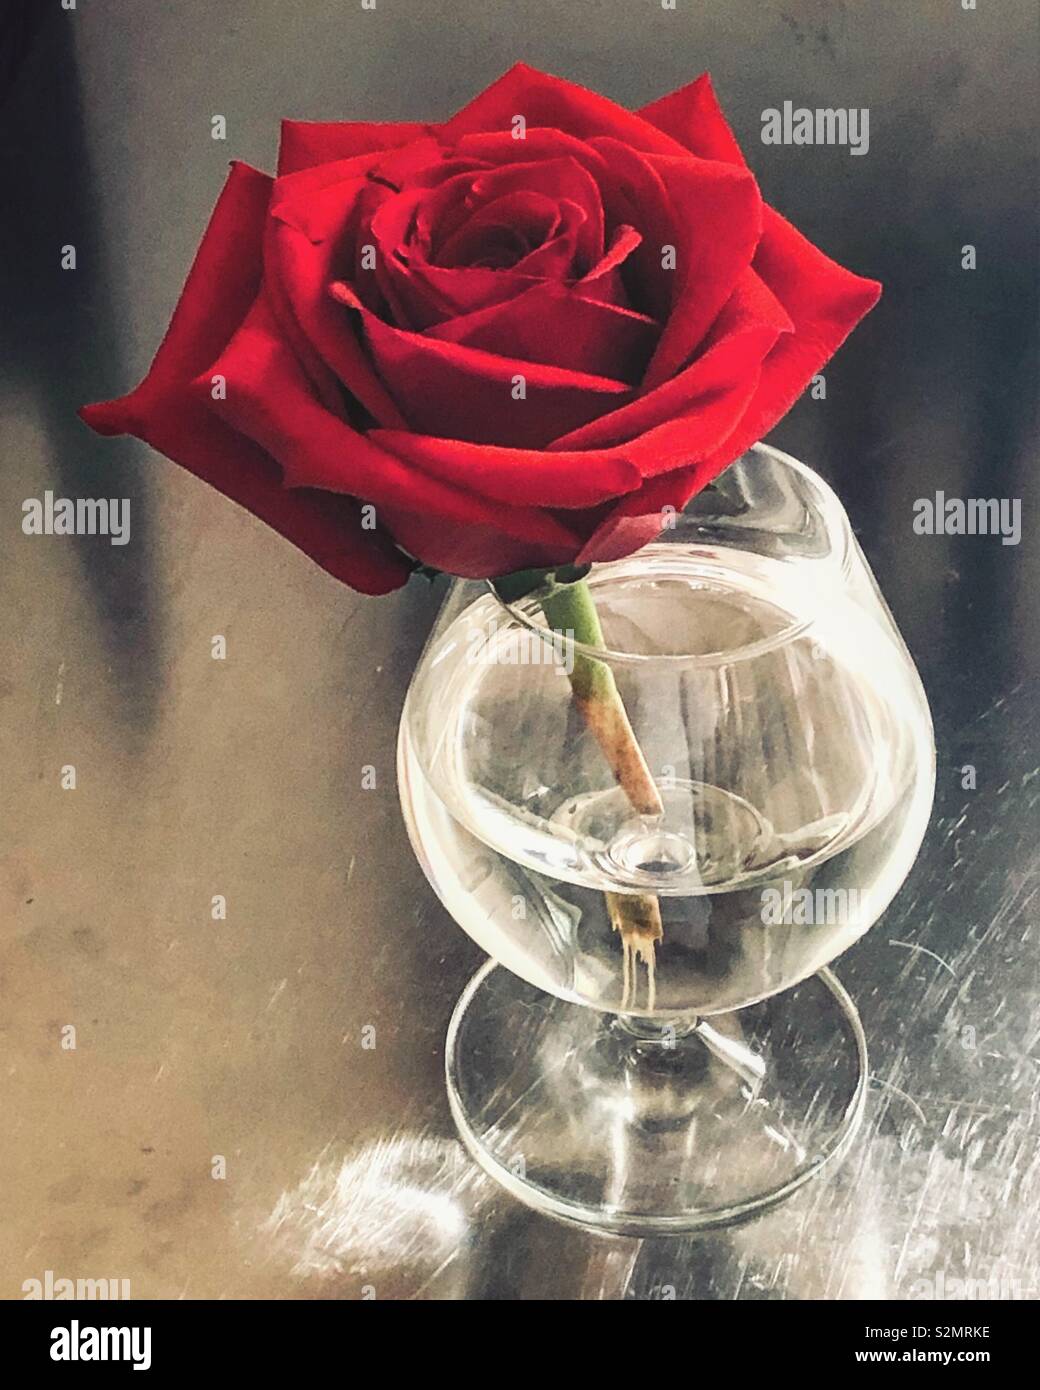 Rose rouge dans un verre de brandy, sur une table en métal Banque D'Images